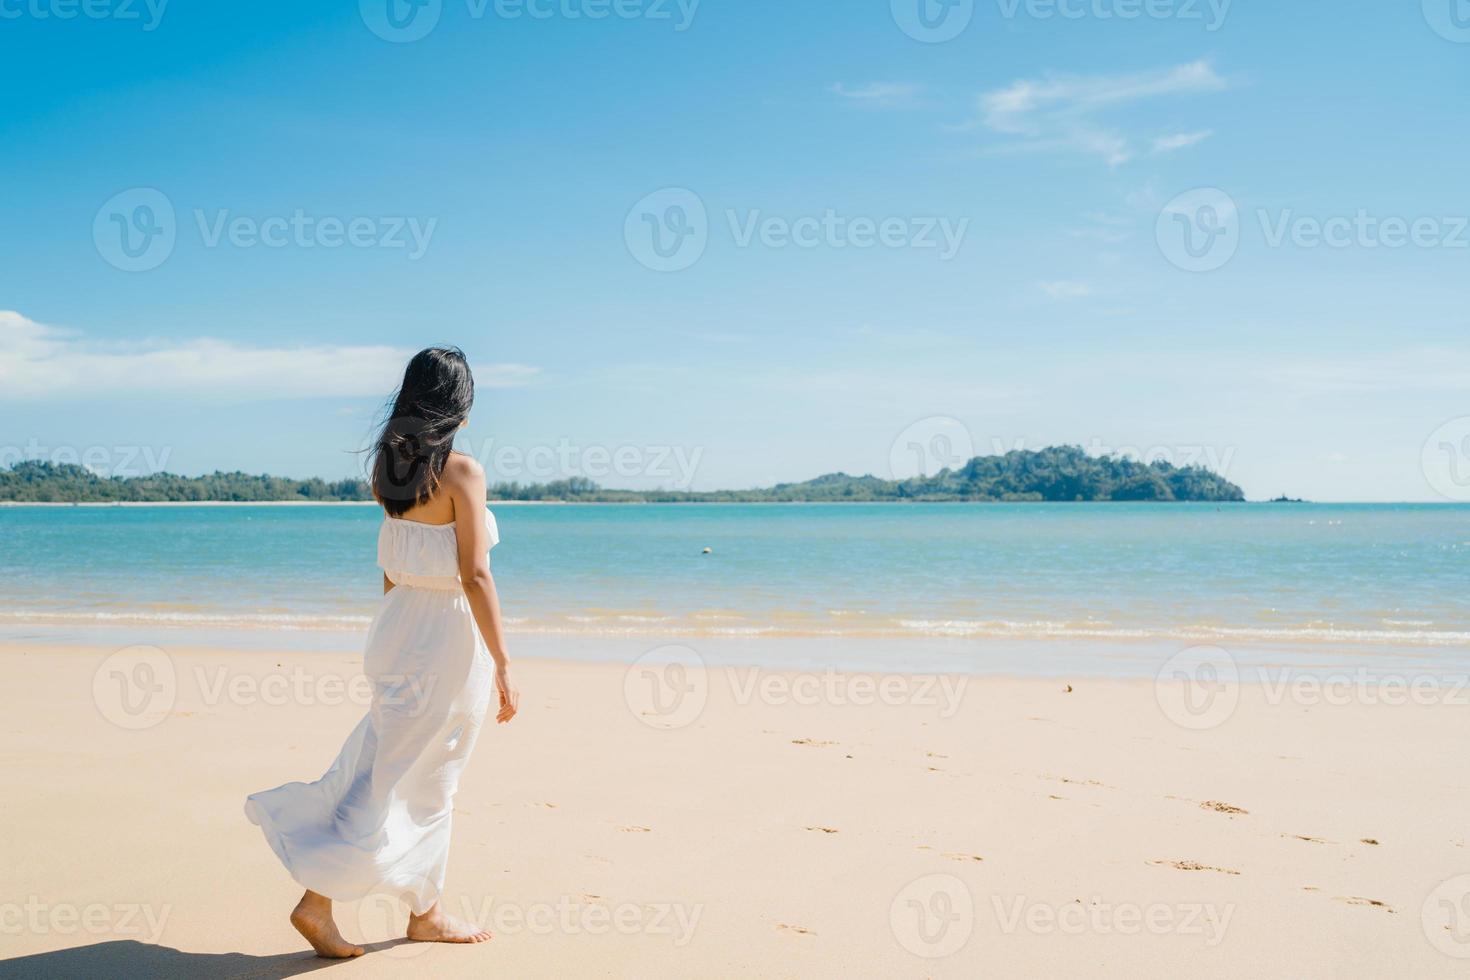 belle jeune femme asiatique heureuse se détendre en marchant sur la plage près de la mer. les femmes de style de vie voyagent sur le concept de plage. photo